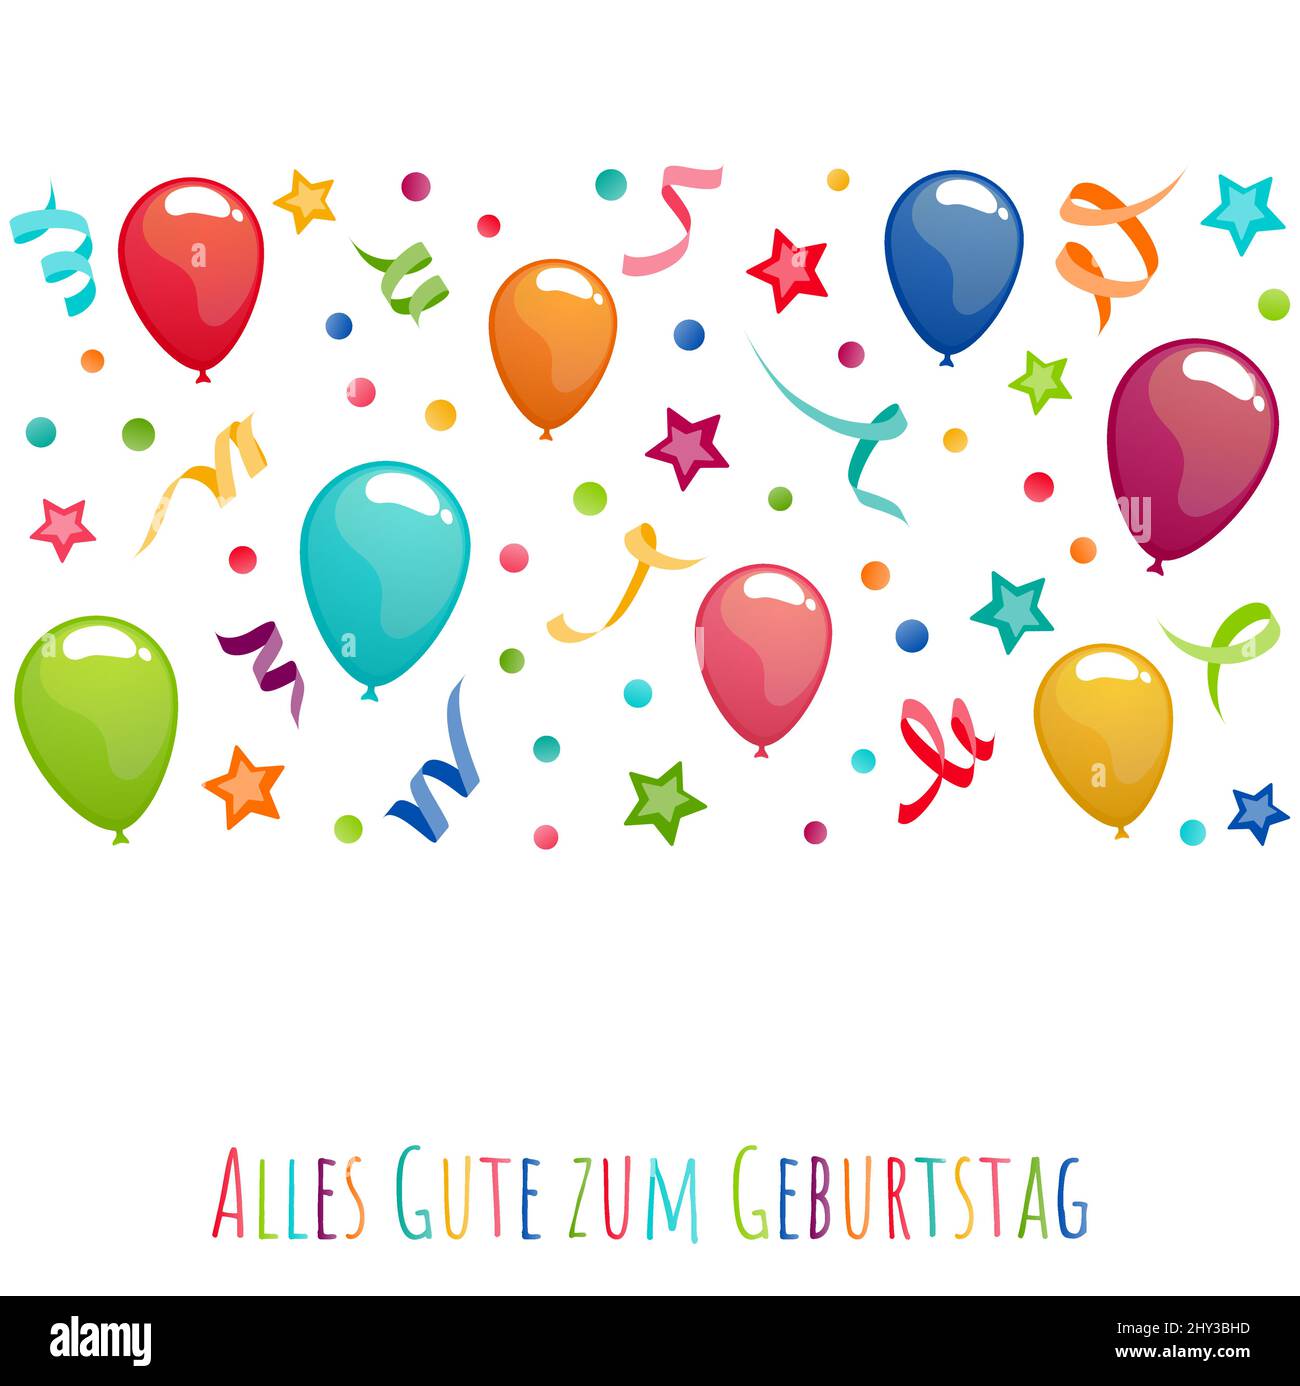 banner file di illustrazione vettoriale eps con auguri di compleanno (testo tedesco) con palloncini, streamer, confetti e stelle per compleanno e festa con Illustrazione Vettoriale